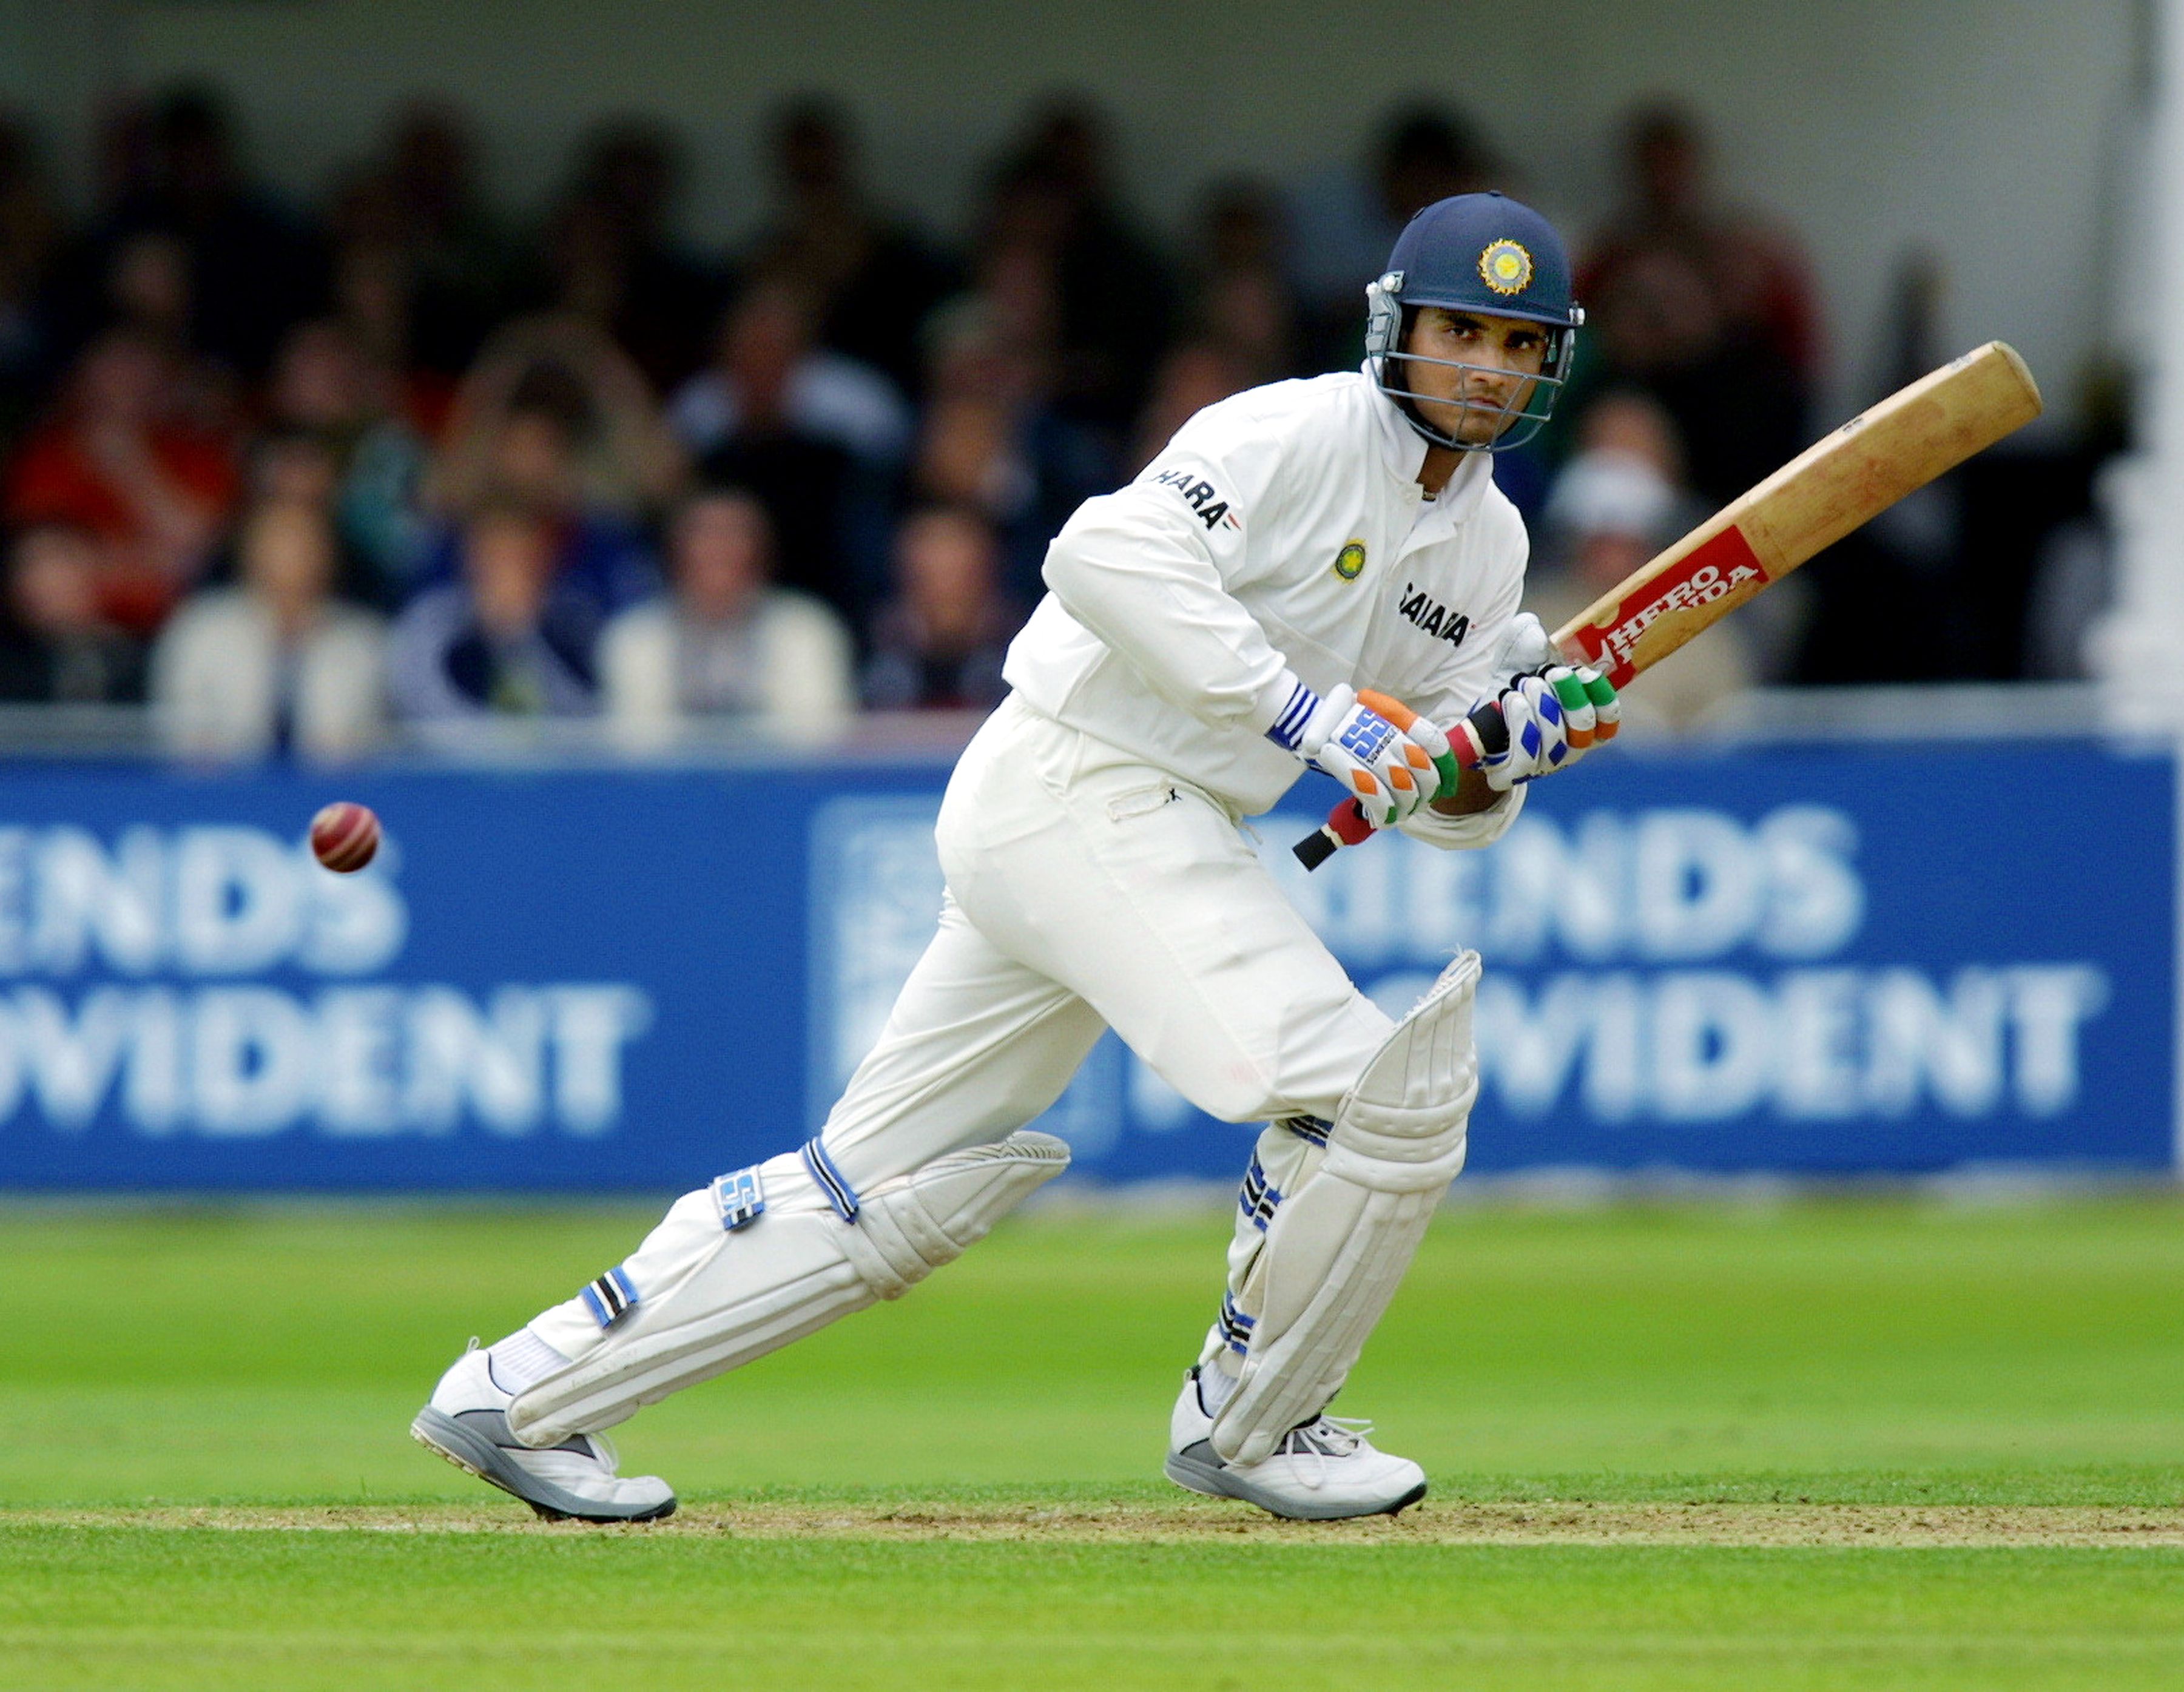 टेस्ट क्रिकेट इतिहास के ऐसे खिलाड़ी जिन्होंने अपने पहले दो टेस्ट में लगाये शतक, पृथ्वी शॉ भी हो सकते है लिस्ट में शामिल 7